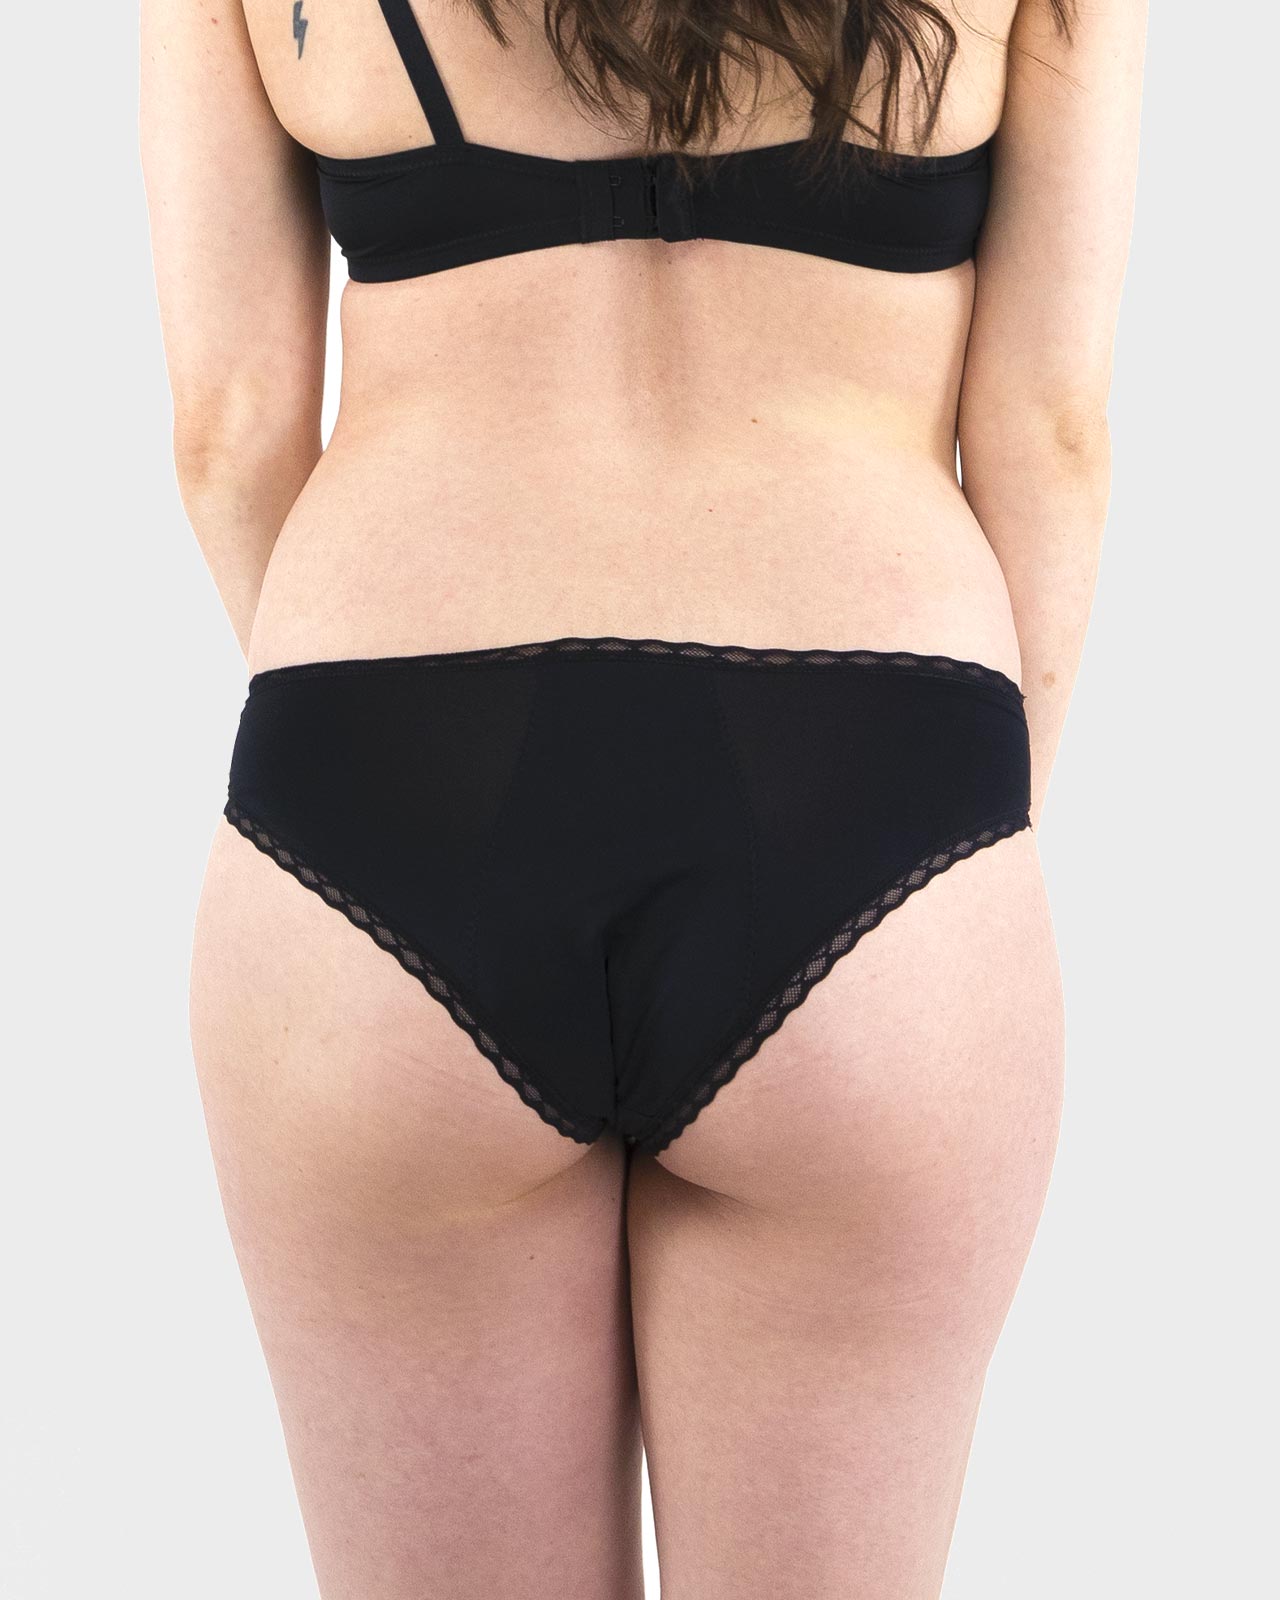 Extra Absorbent 4 Layer LeakProof Panties - DesignComfort